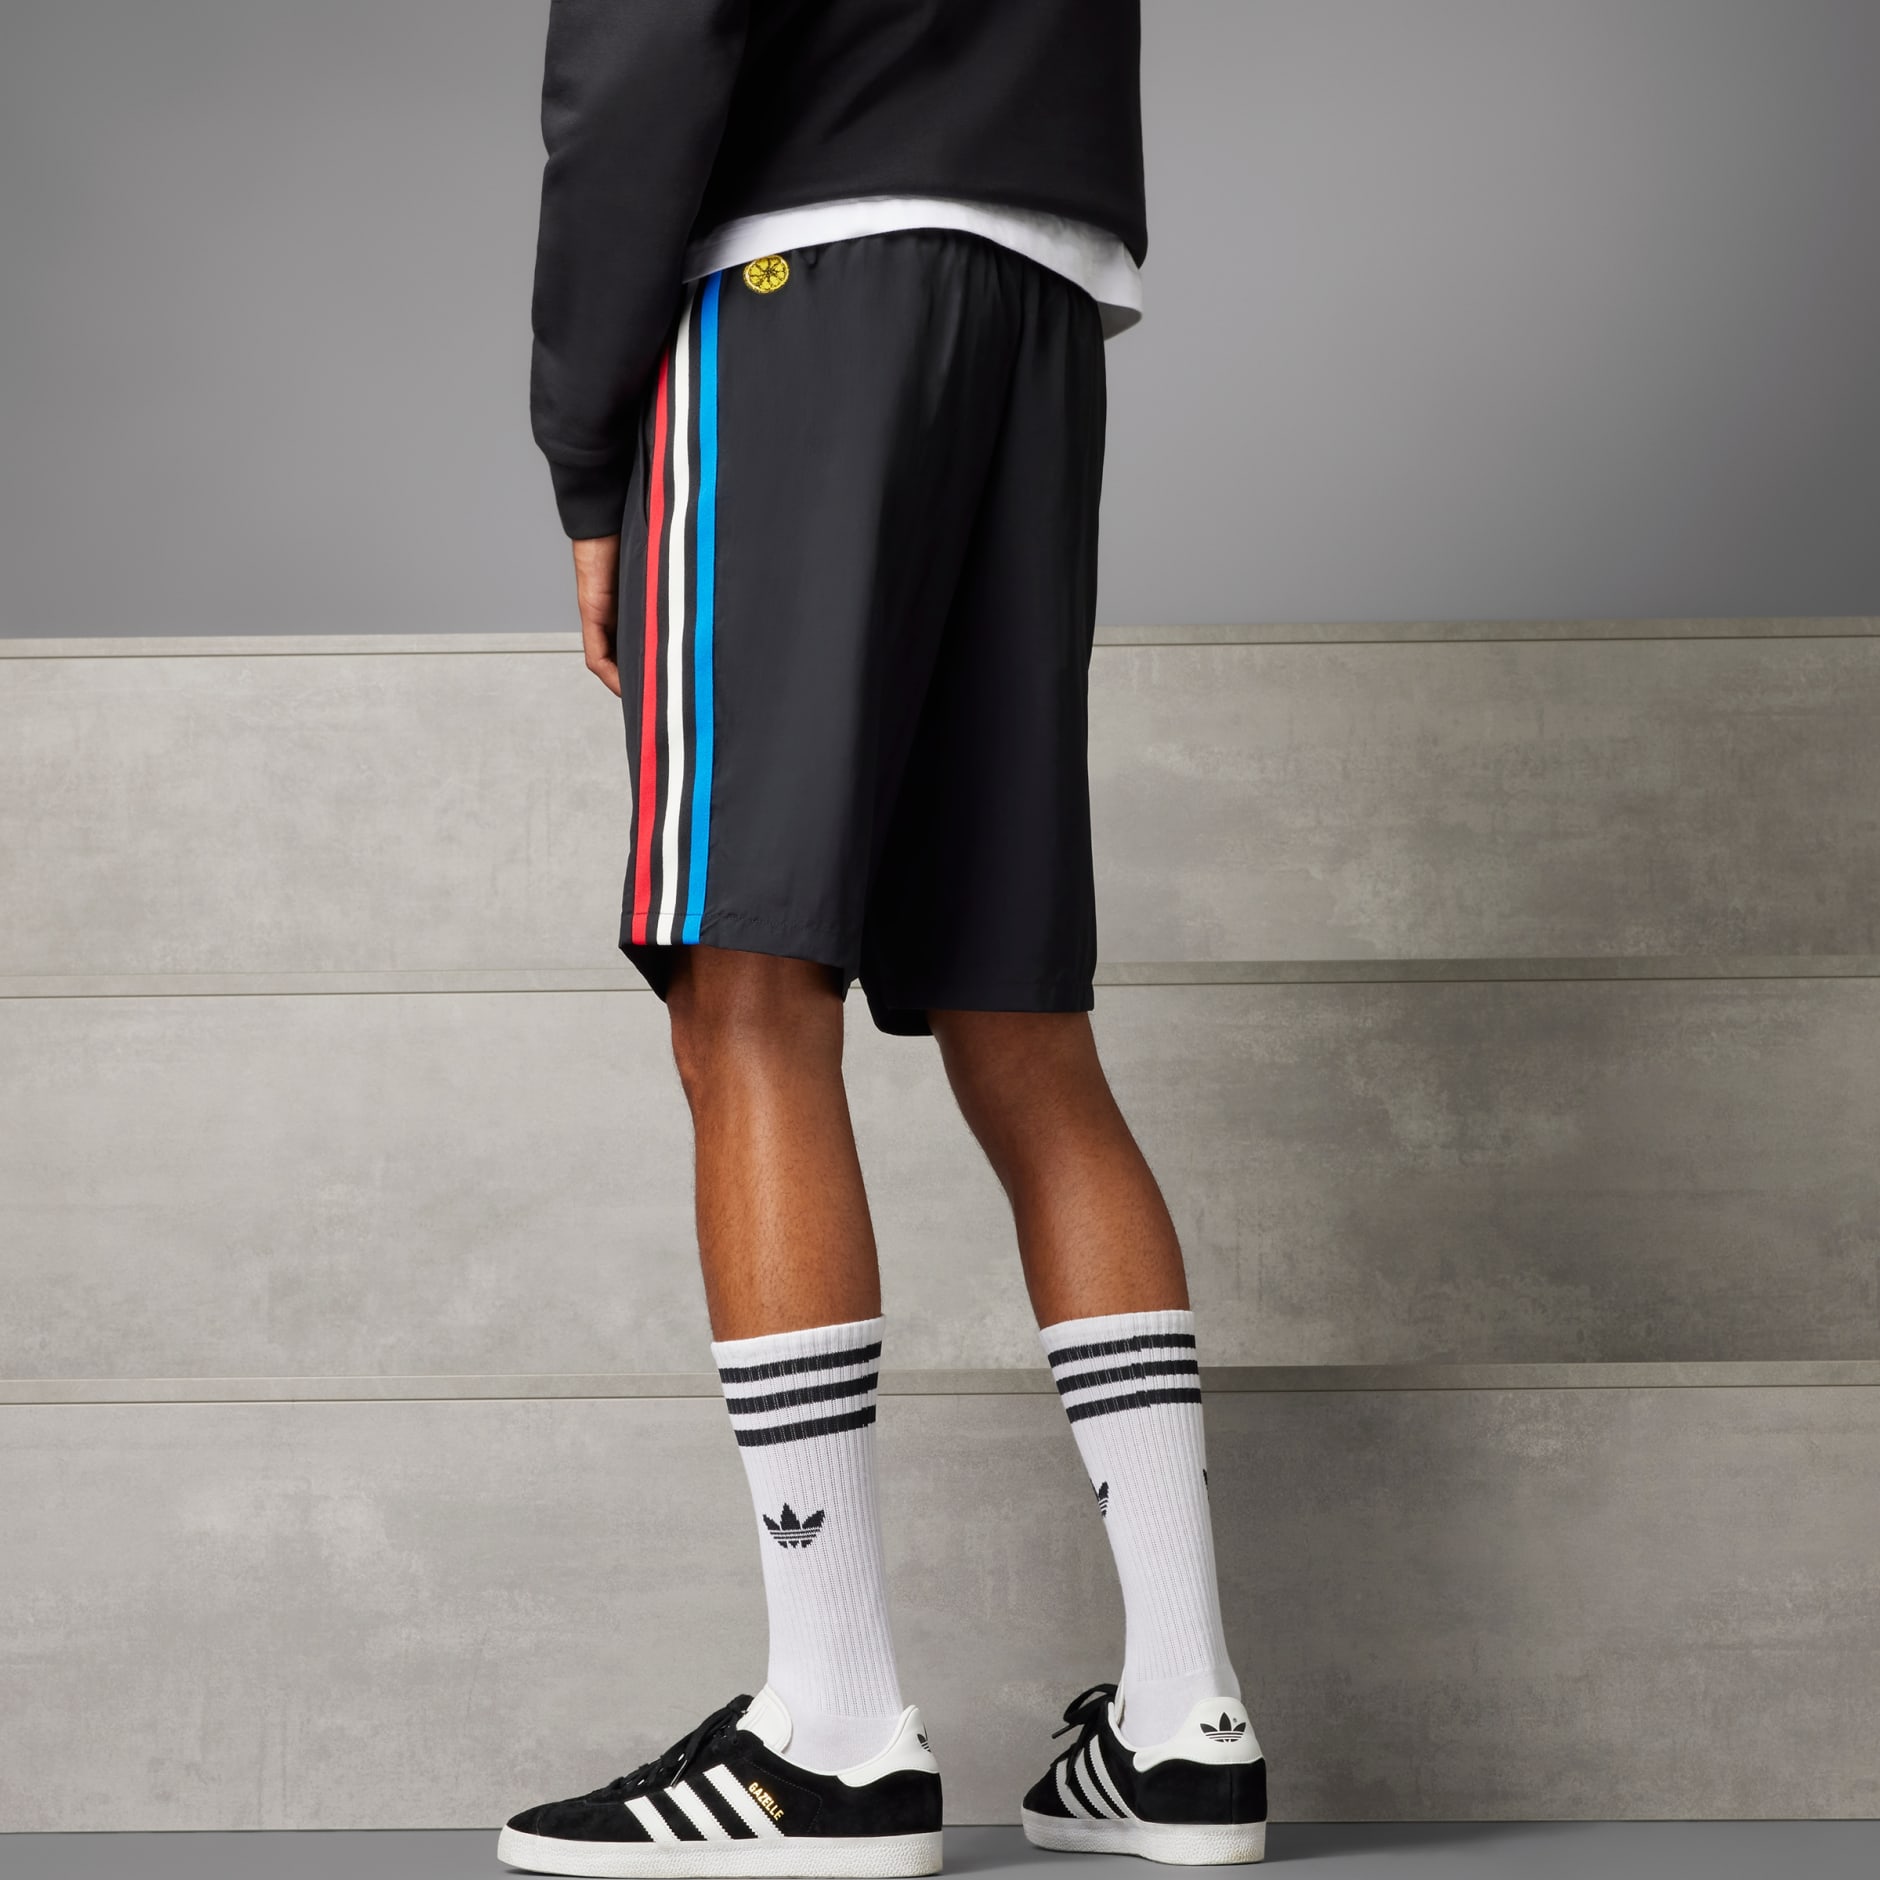 adidas gazelle with shorts